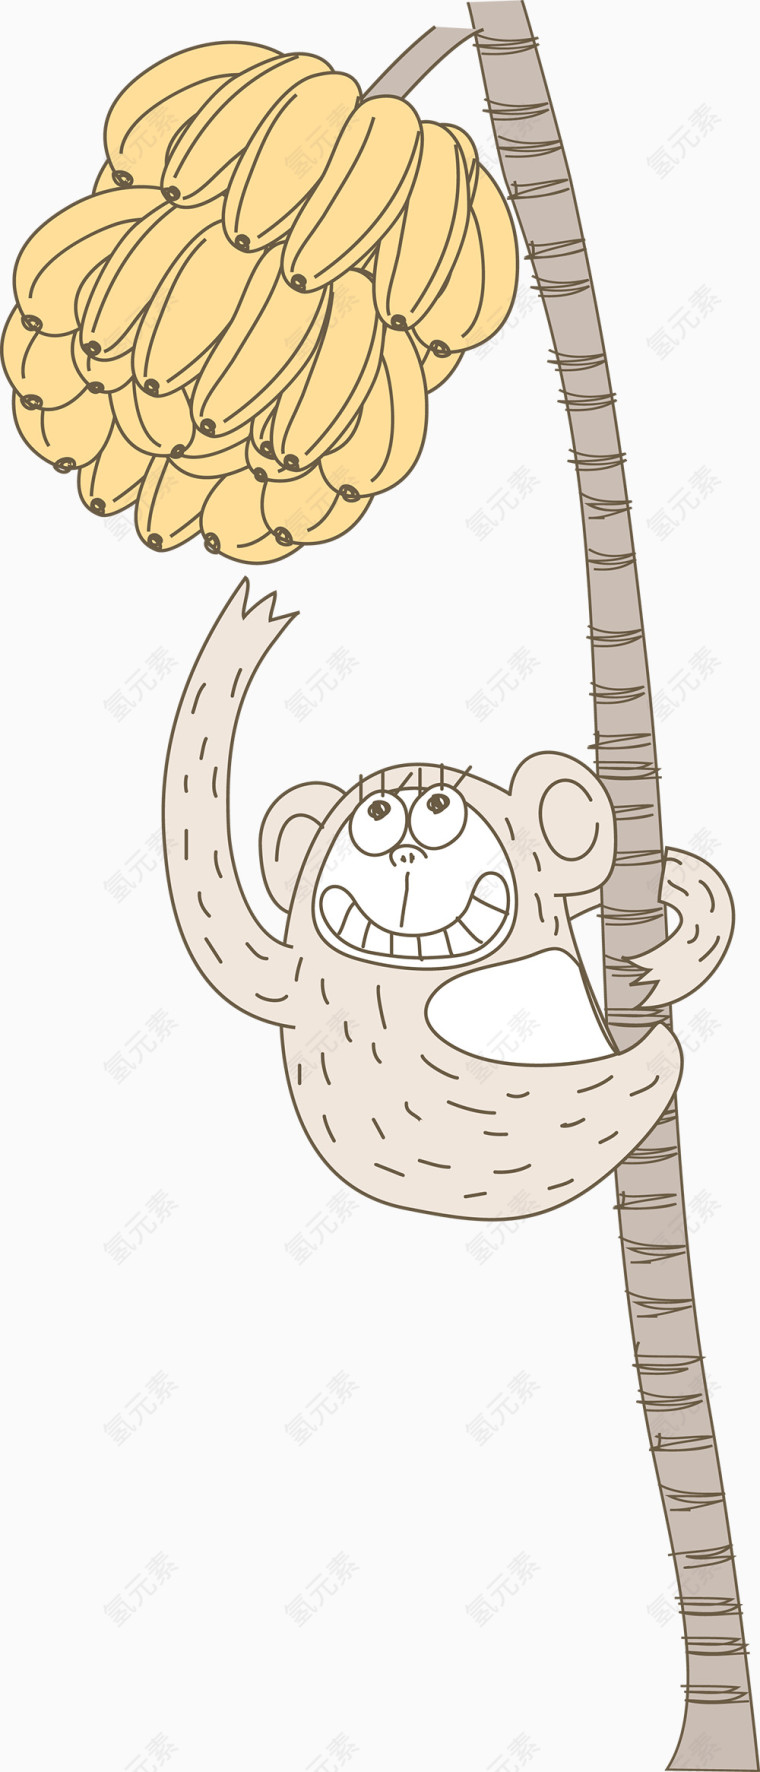 爬香蕉树的小猴子